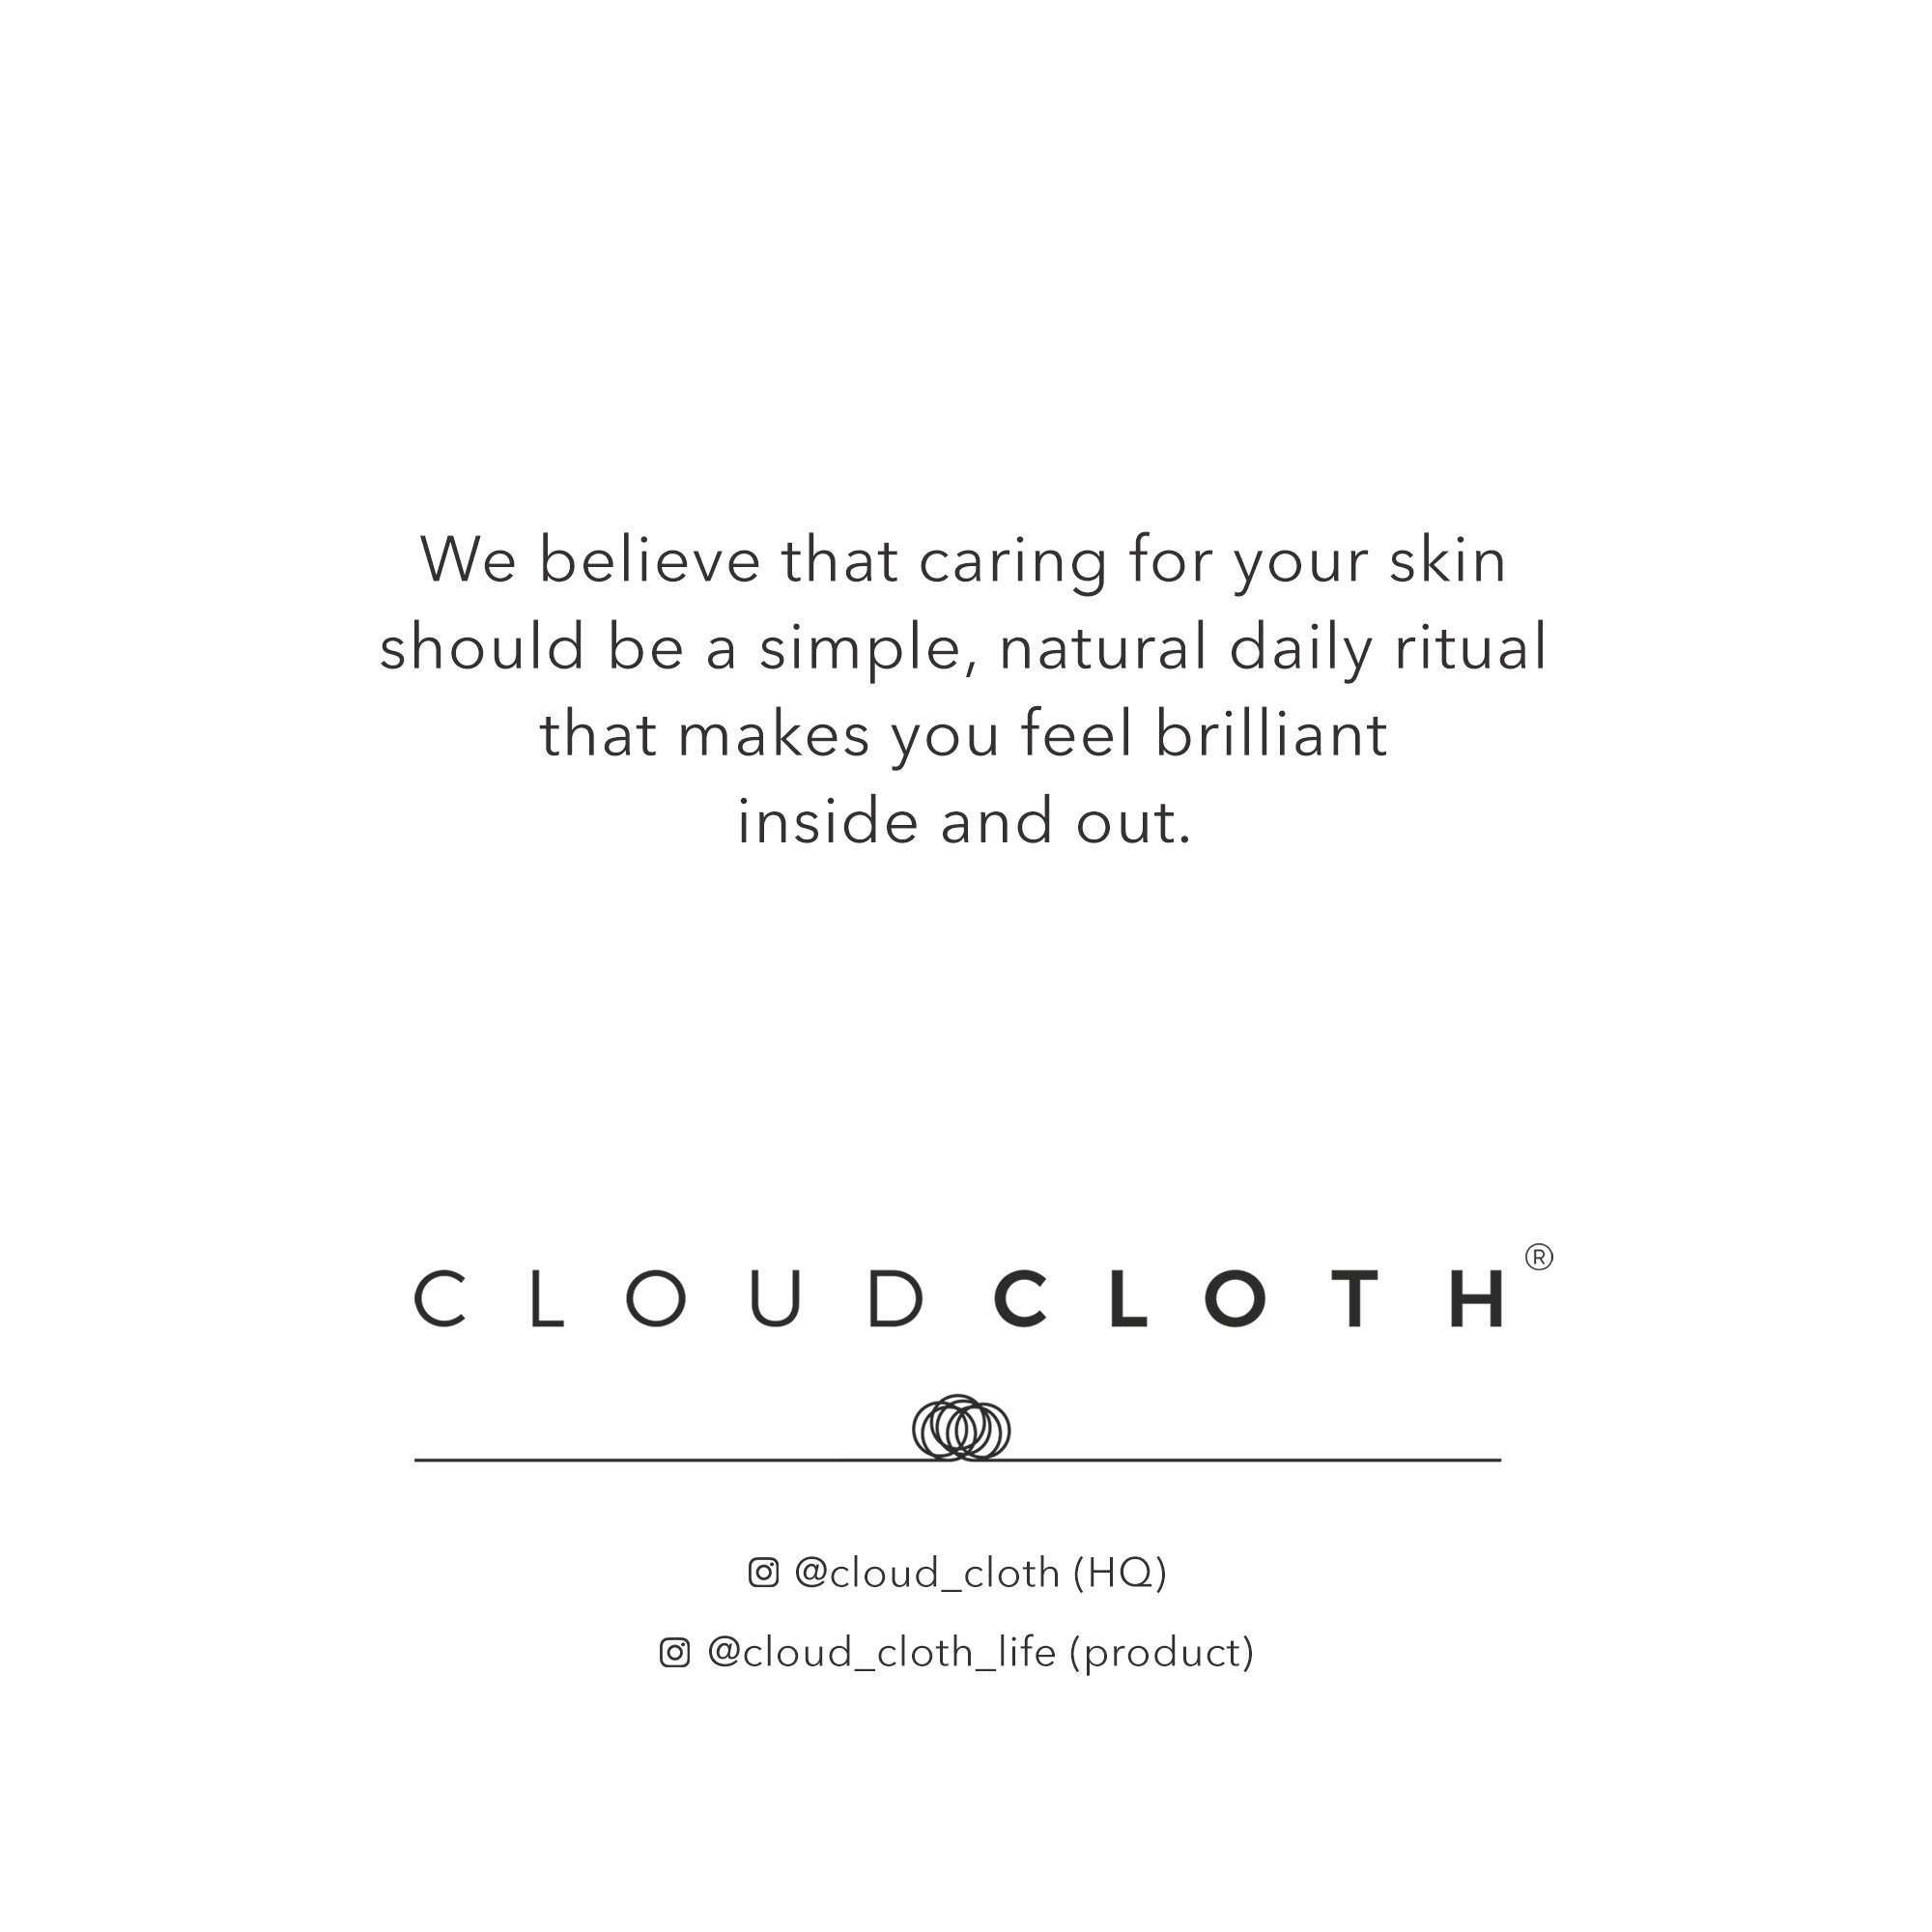 cloudcloth